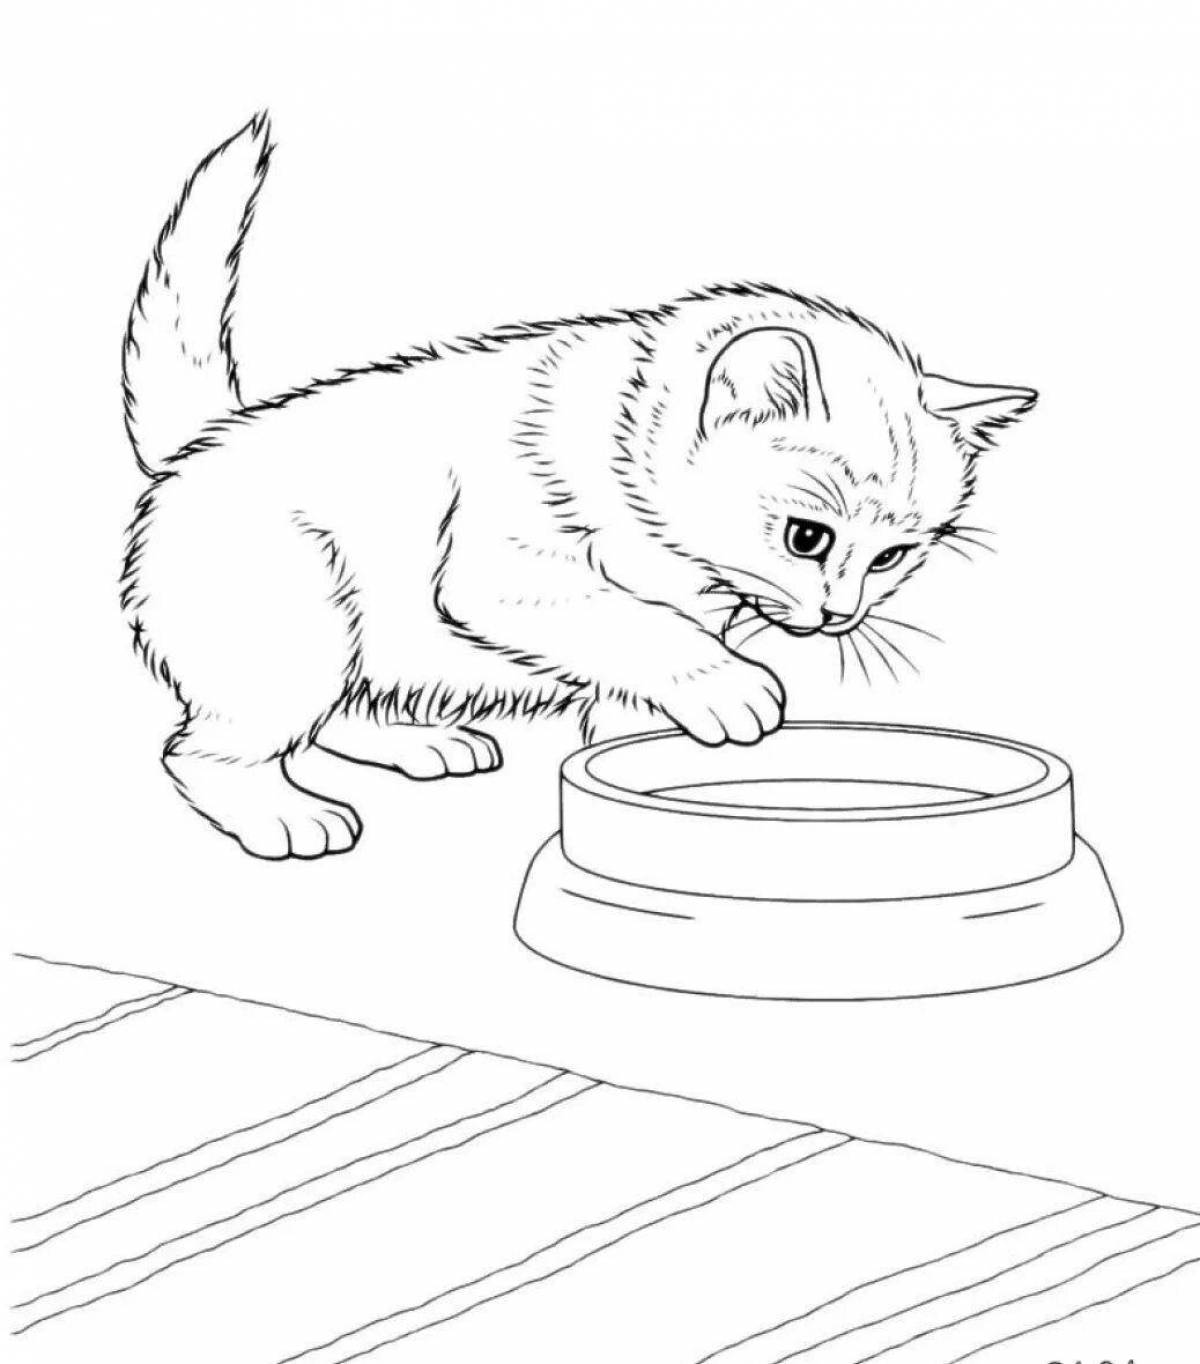 Sweet kitten drawing for kids